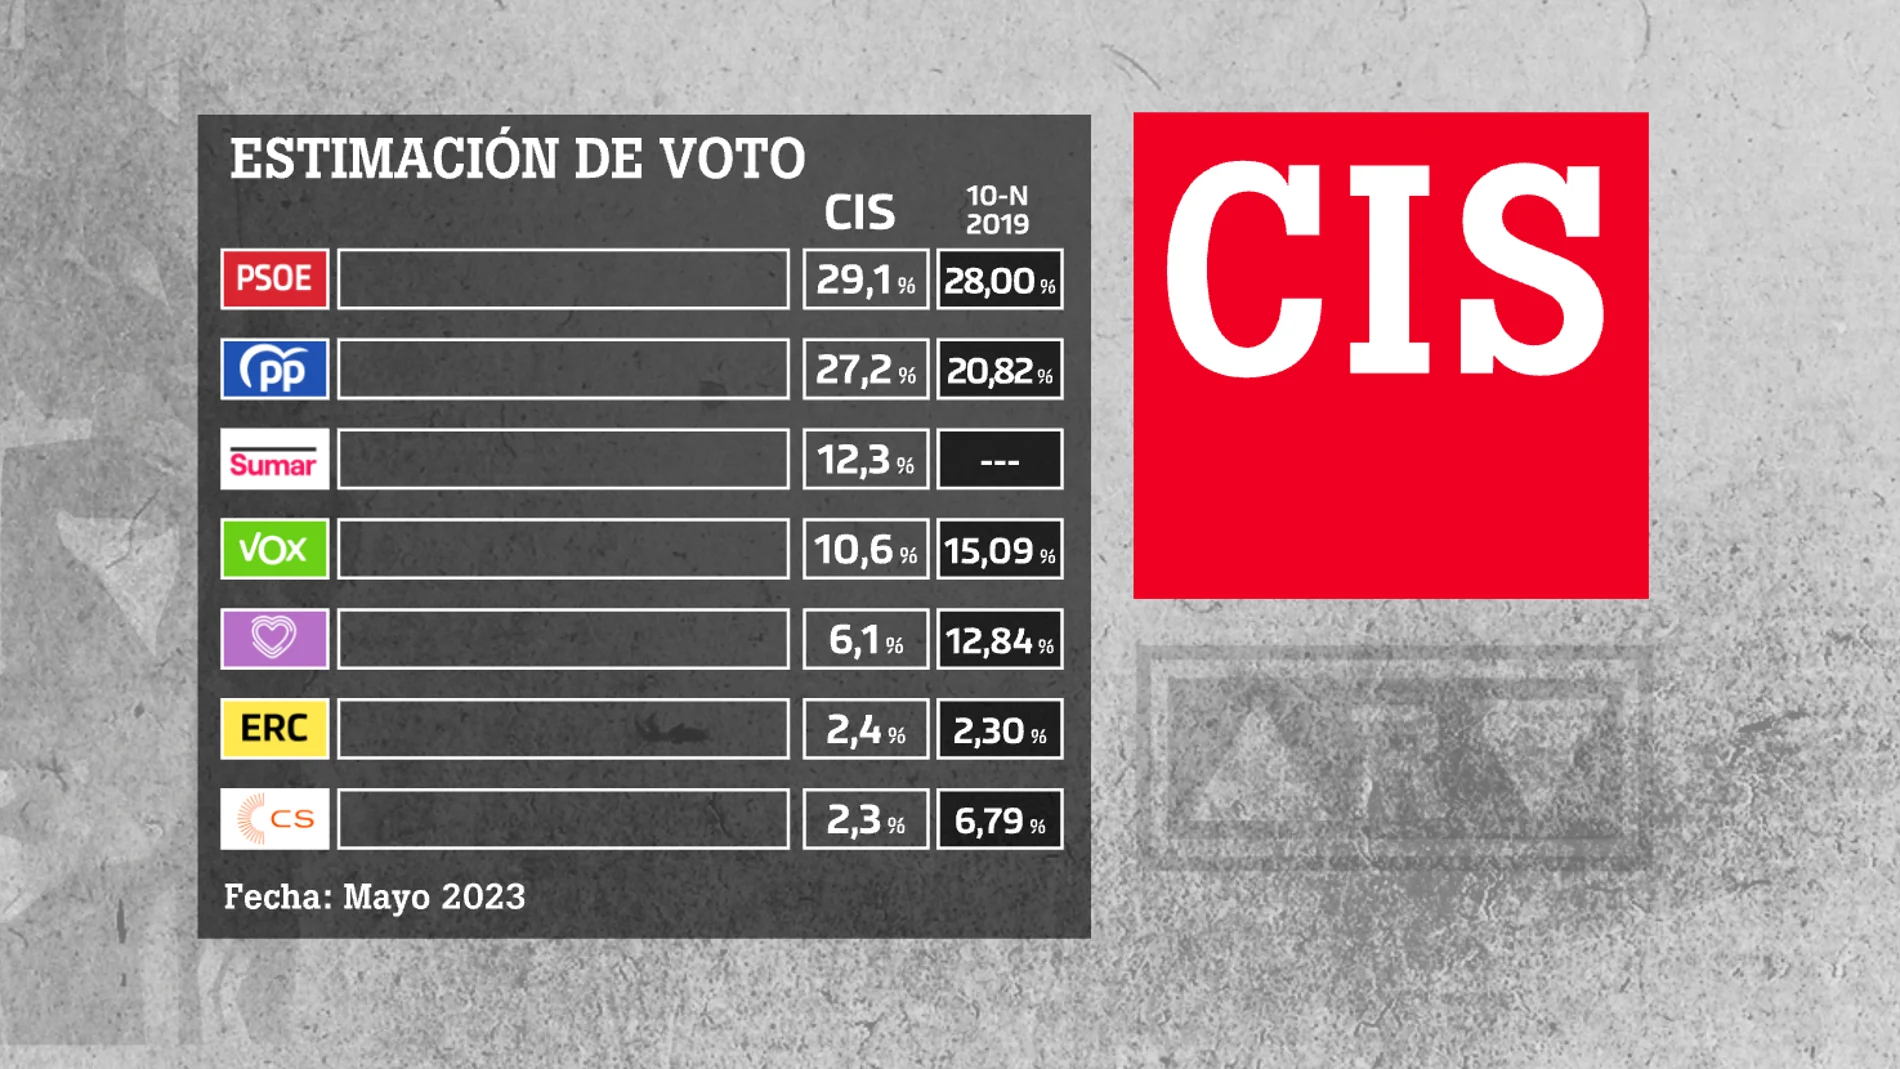 Fuerza soltero Esta llorando CIS: el PSOE ganaría las elecciones generales con el 29,1% del voto y Sumar  sería tercera fuerza con el 12,3%